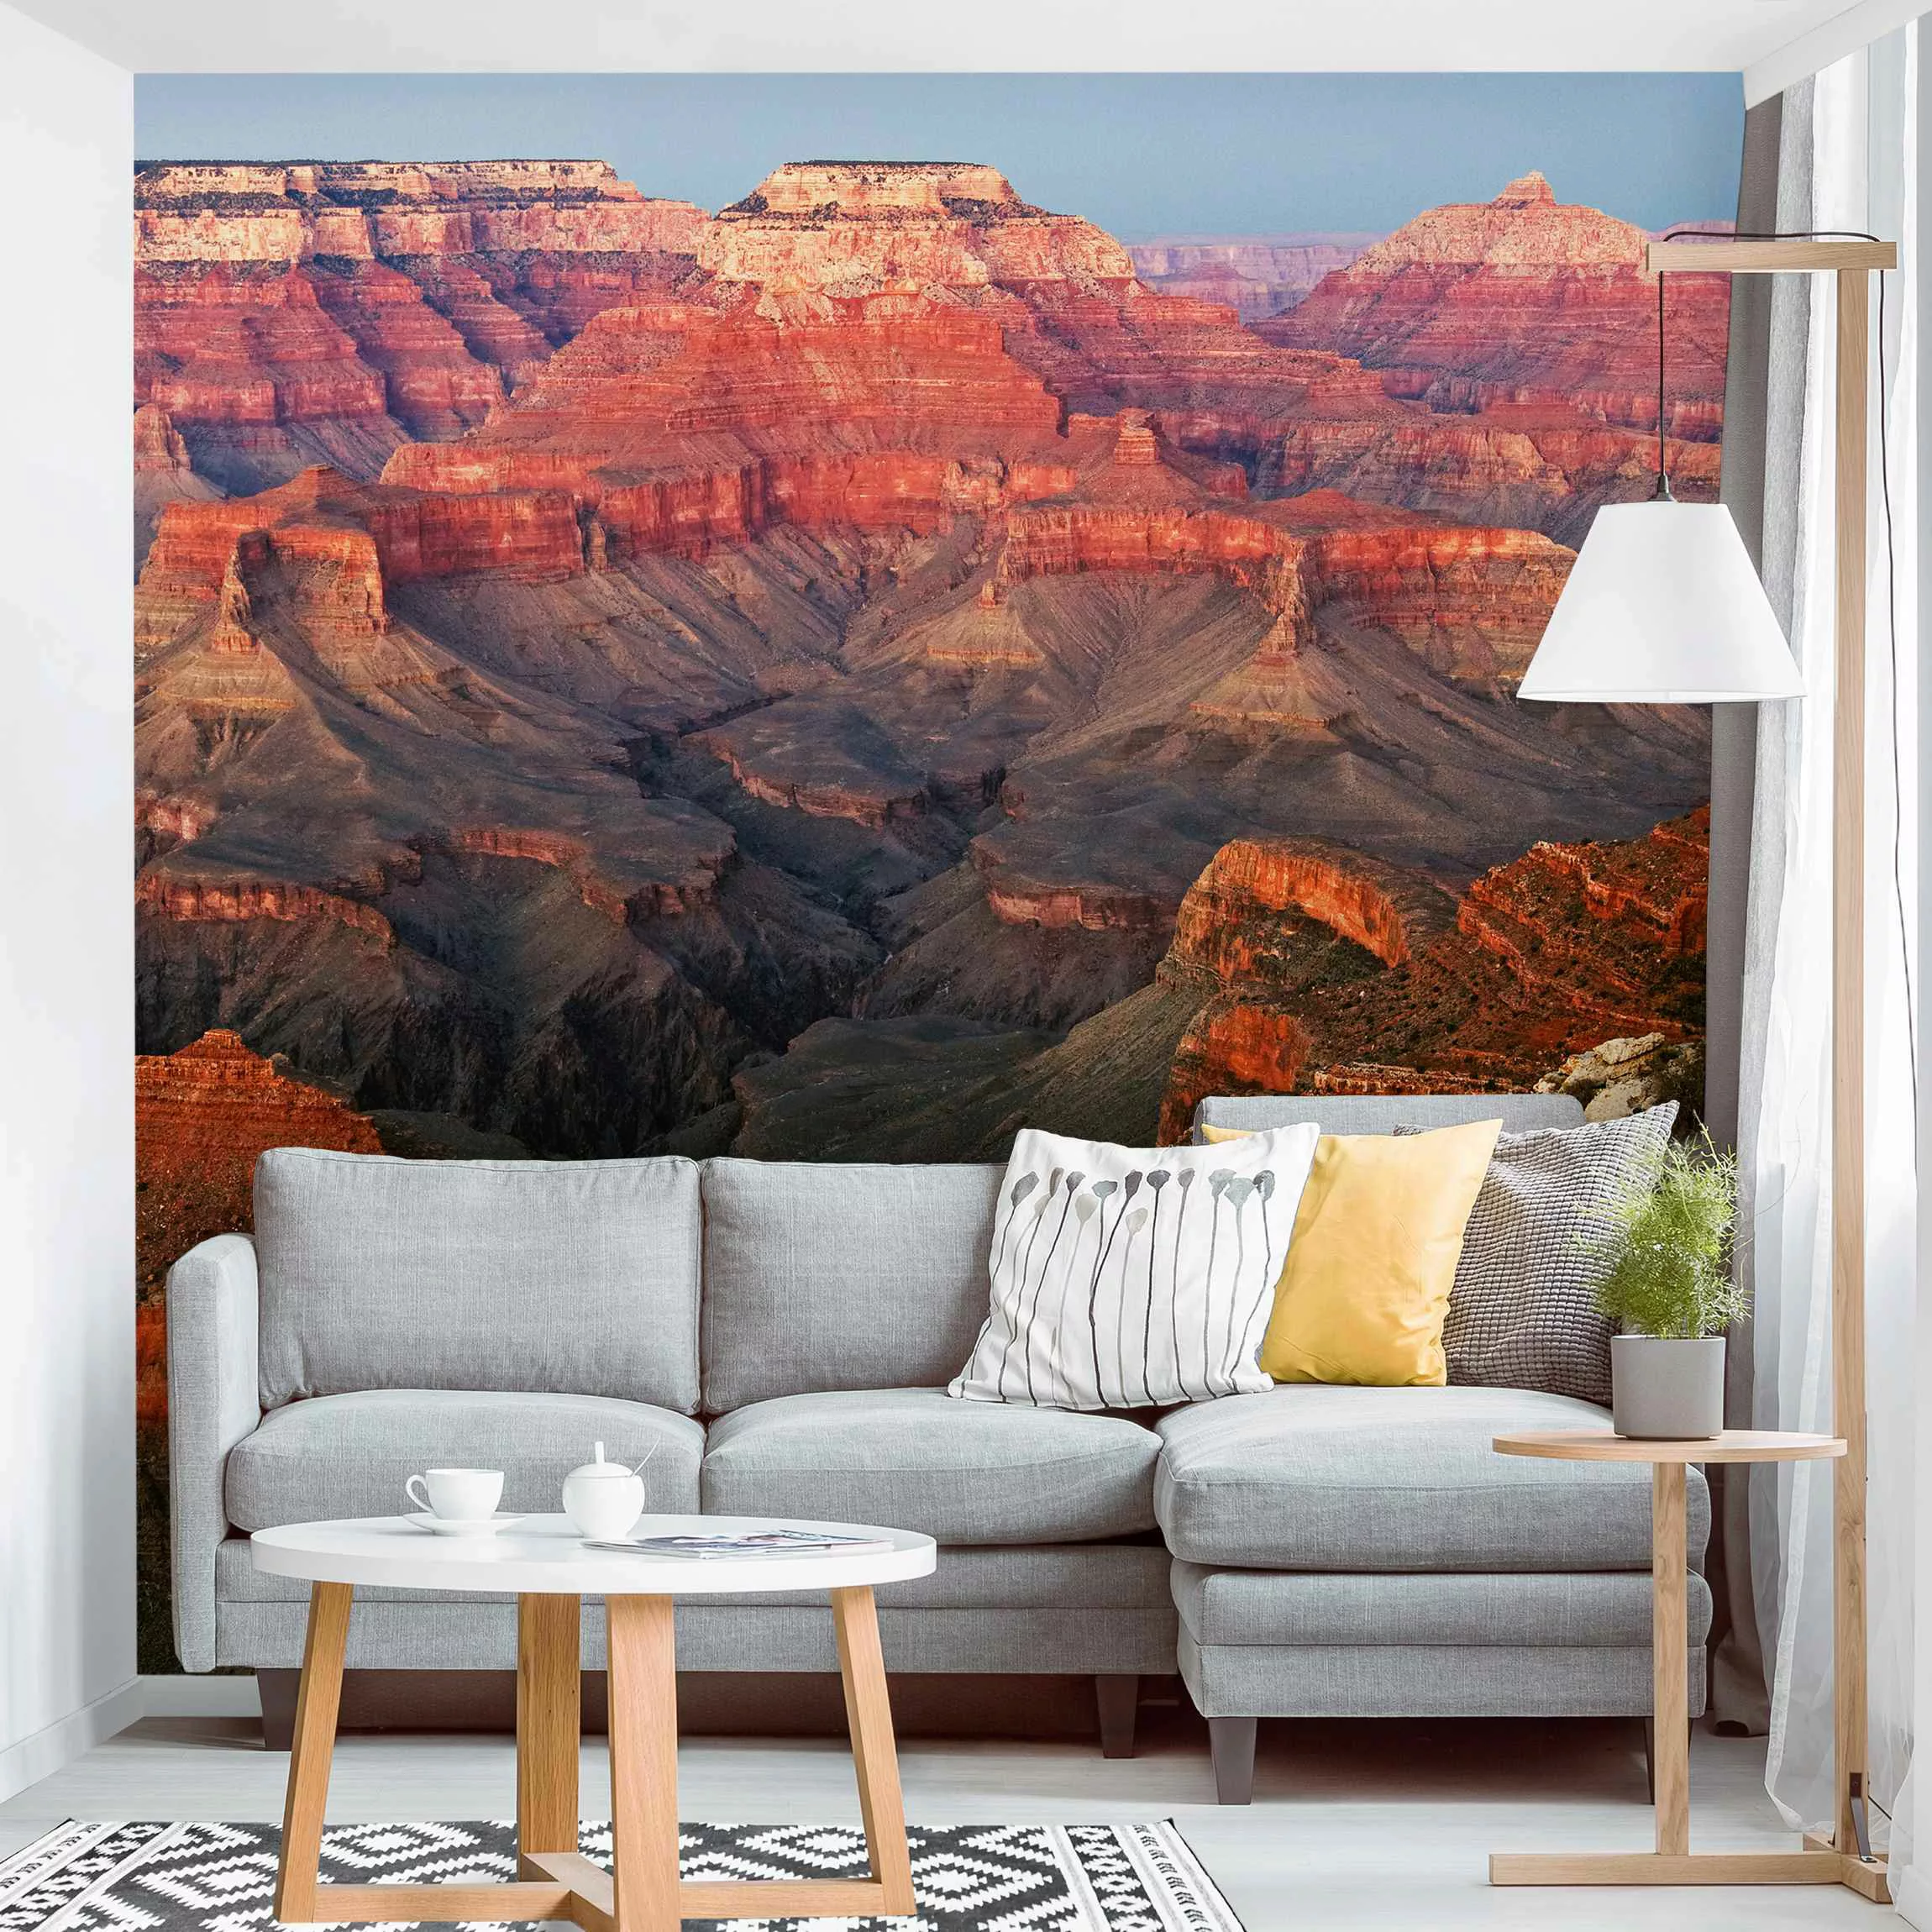 Fototapete Grand Canyon nach dem Sonnenuntergang günstig online kaufen